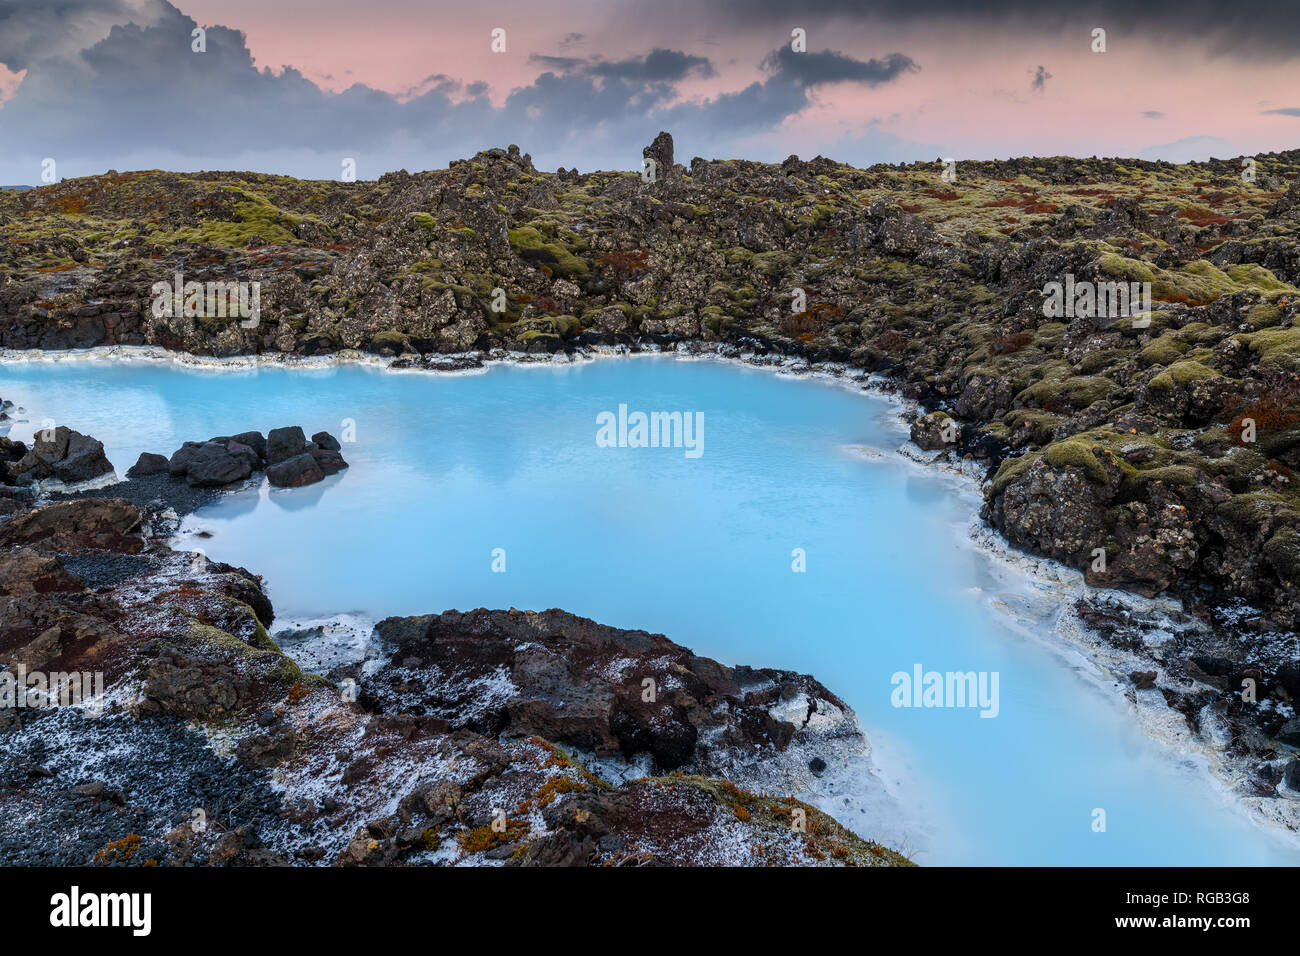 Drammatico paesaggio di un bellissimo terreno vulcanico con nere rocce vulcaniche e acqua turchese a laguna blu nei pressi di Grindavik nella penisola di Reykjanes Foto Stock